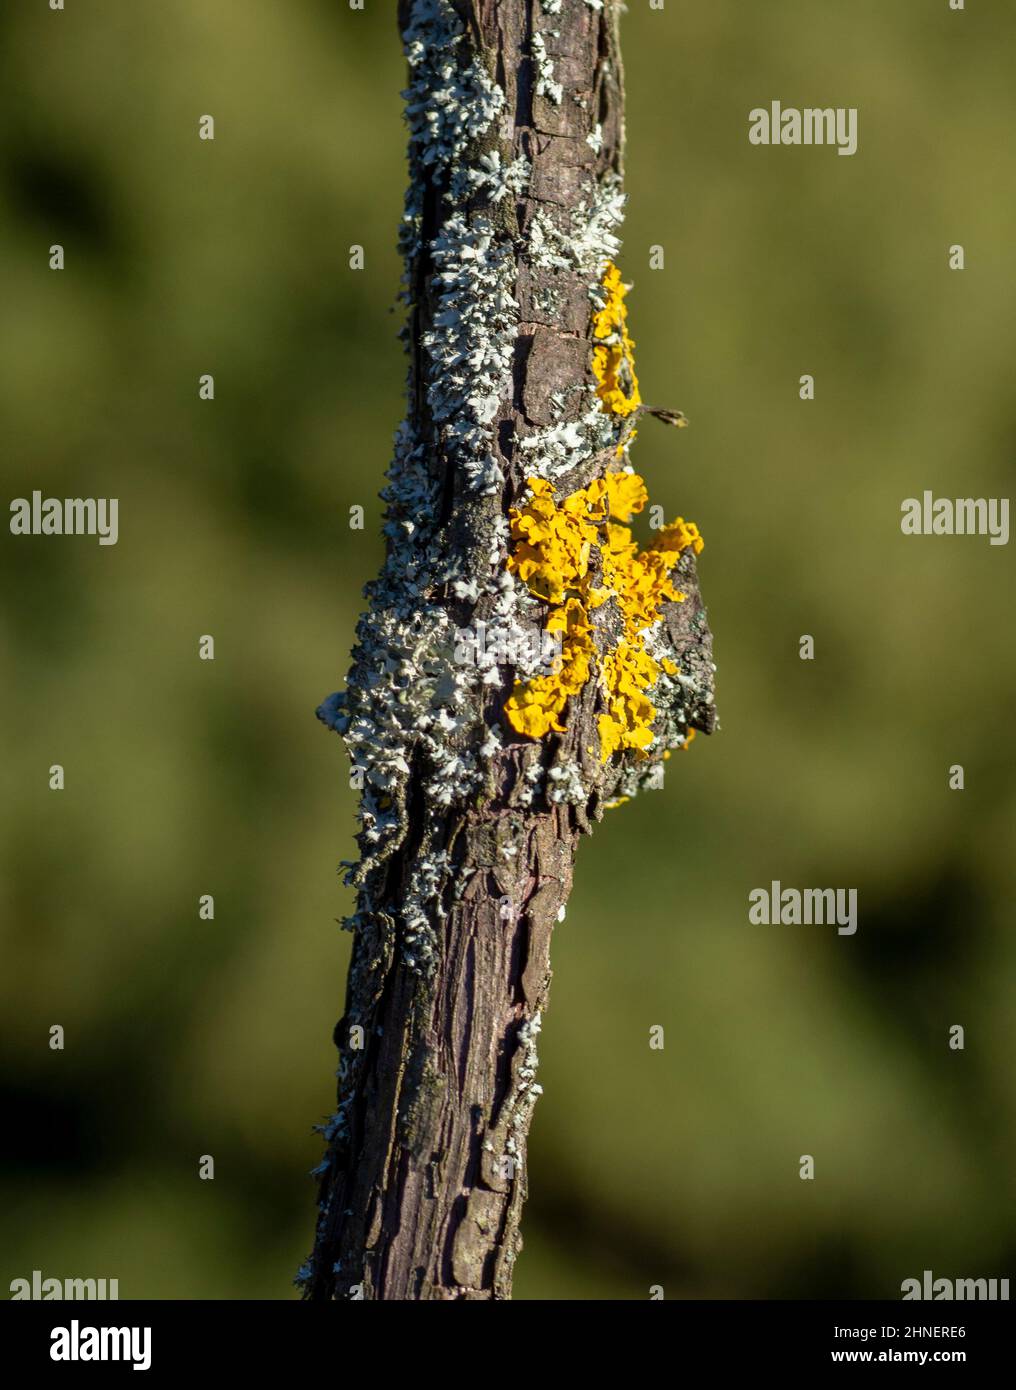 Common orange lichen (Xanthoria parietina), also known as yellow scale, maritime sunburst lichen and shore lichen on the grapevine plant branch. Stock Photo